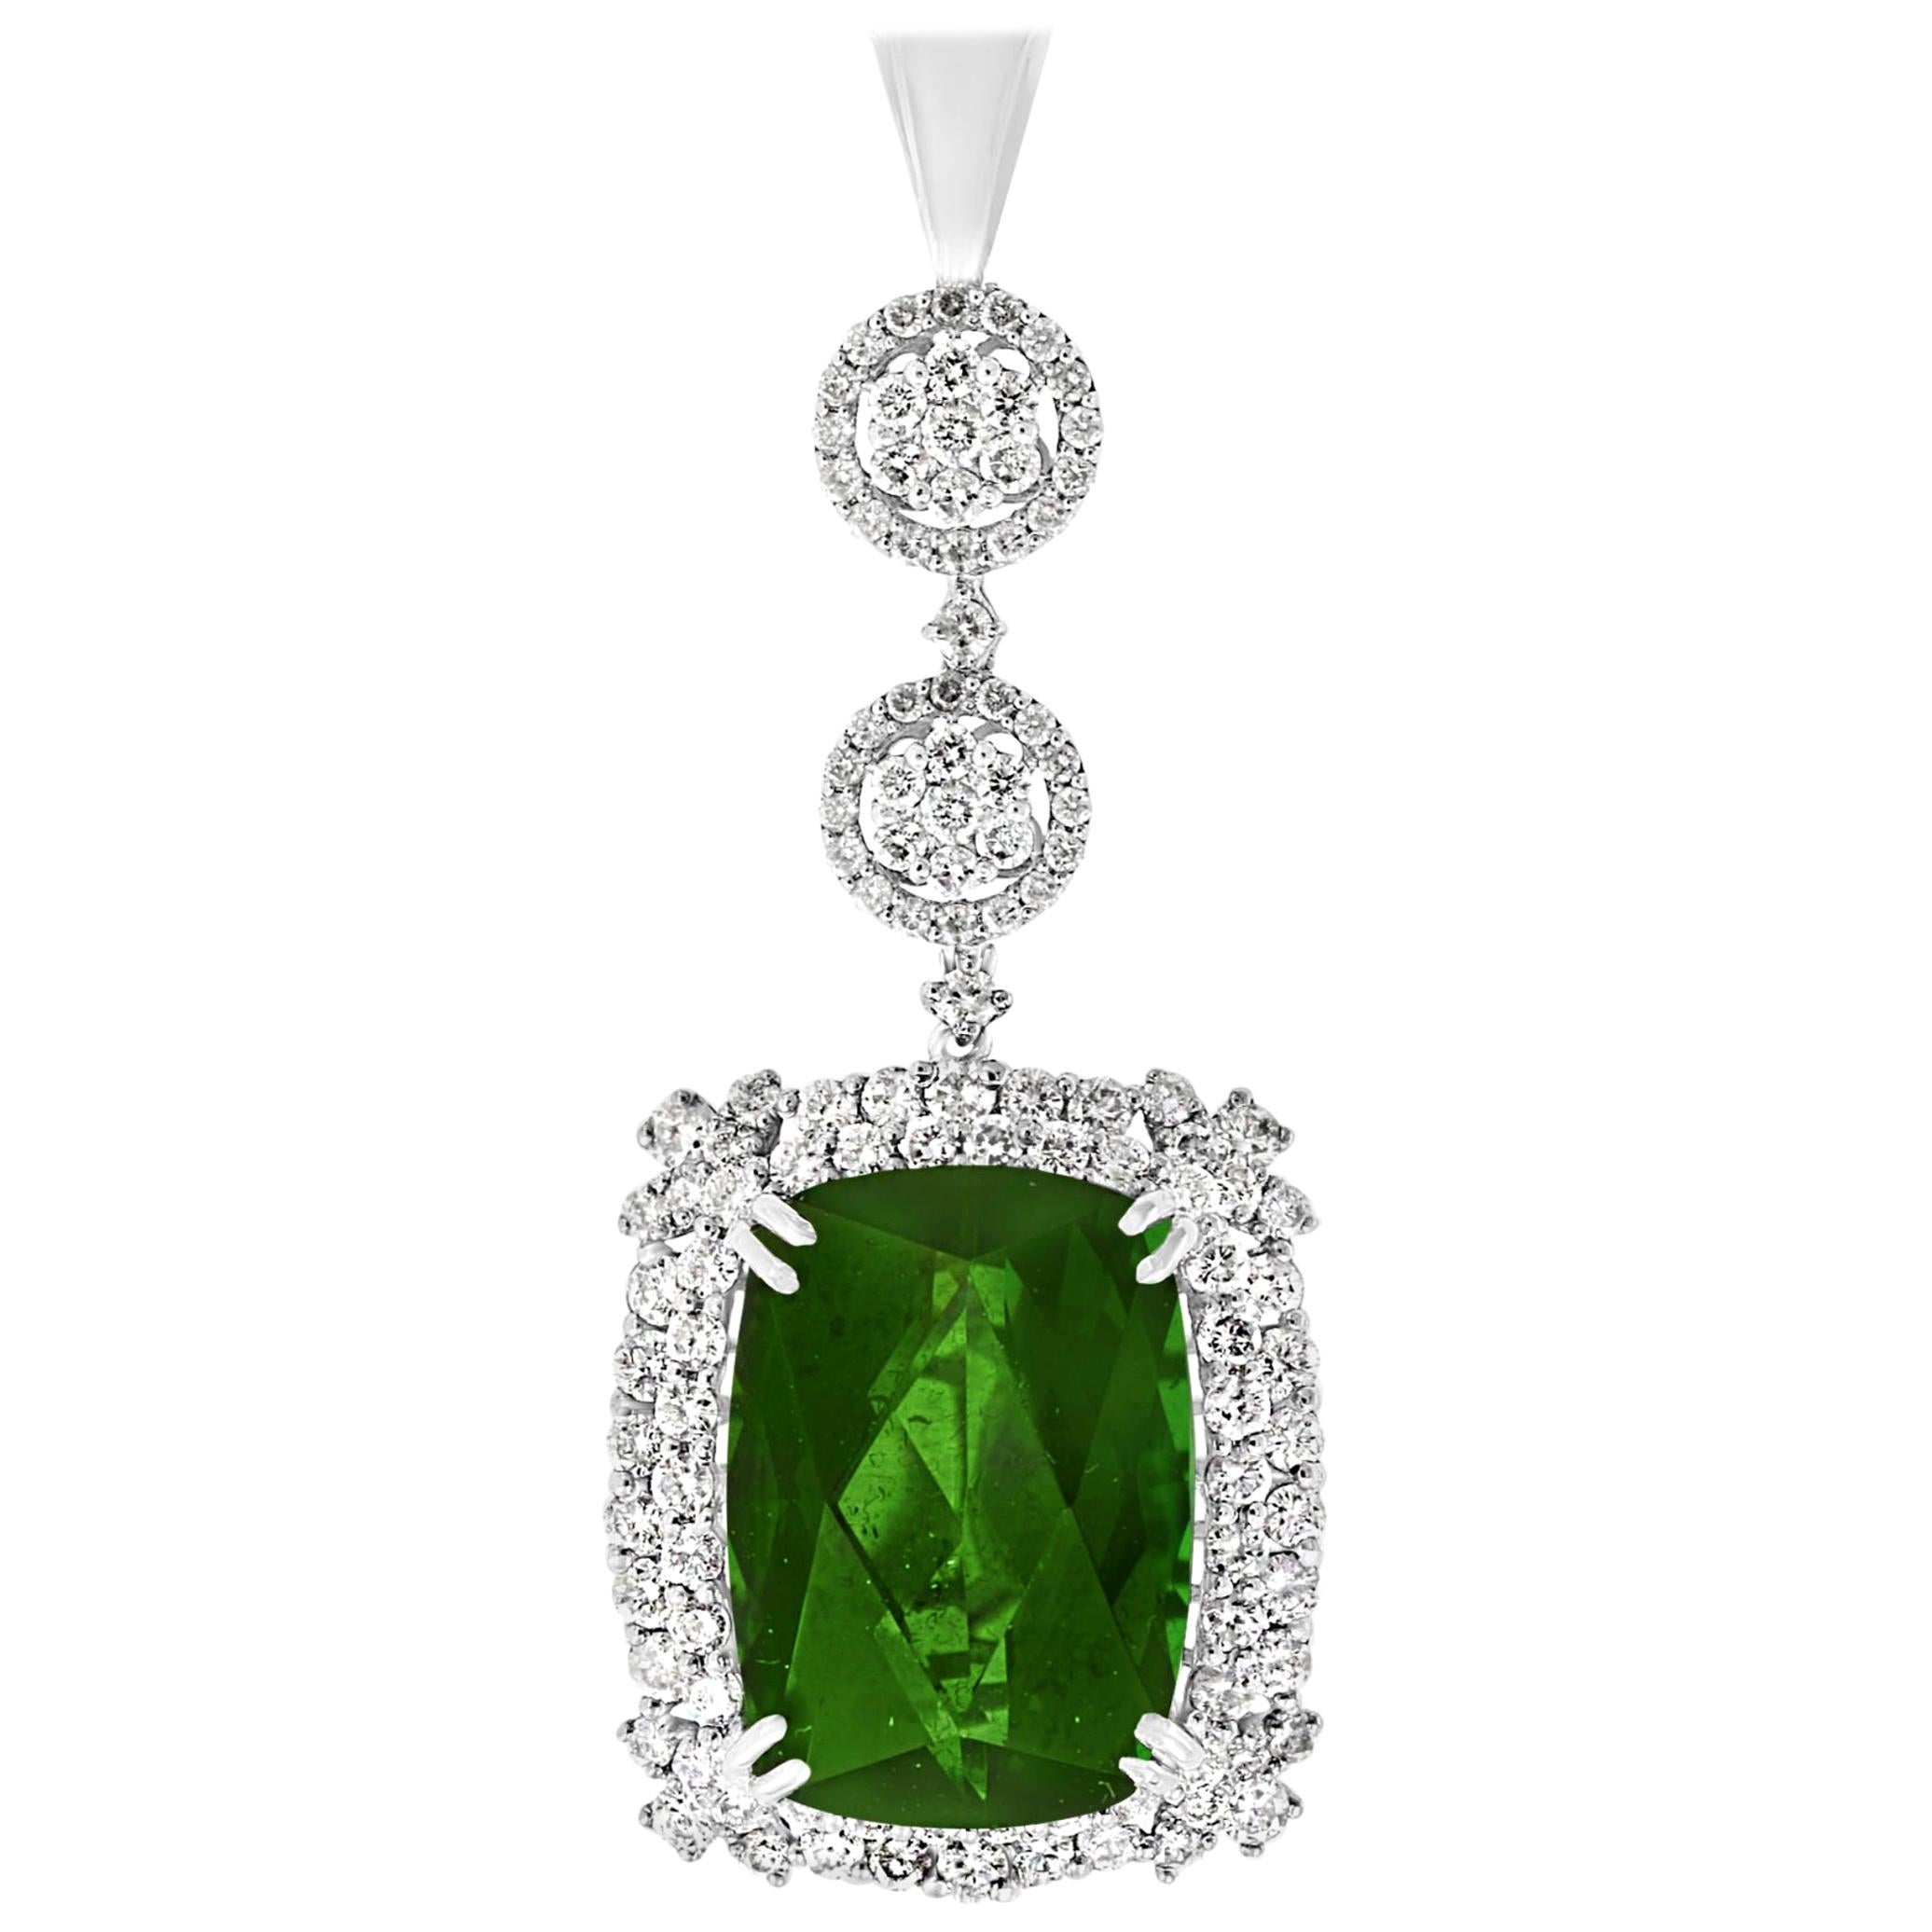 17 Carat Green Tourmaline and 4 Carat Diamond Pendant / Necklace 14 Karat Gold